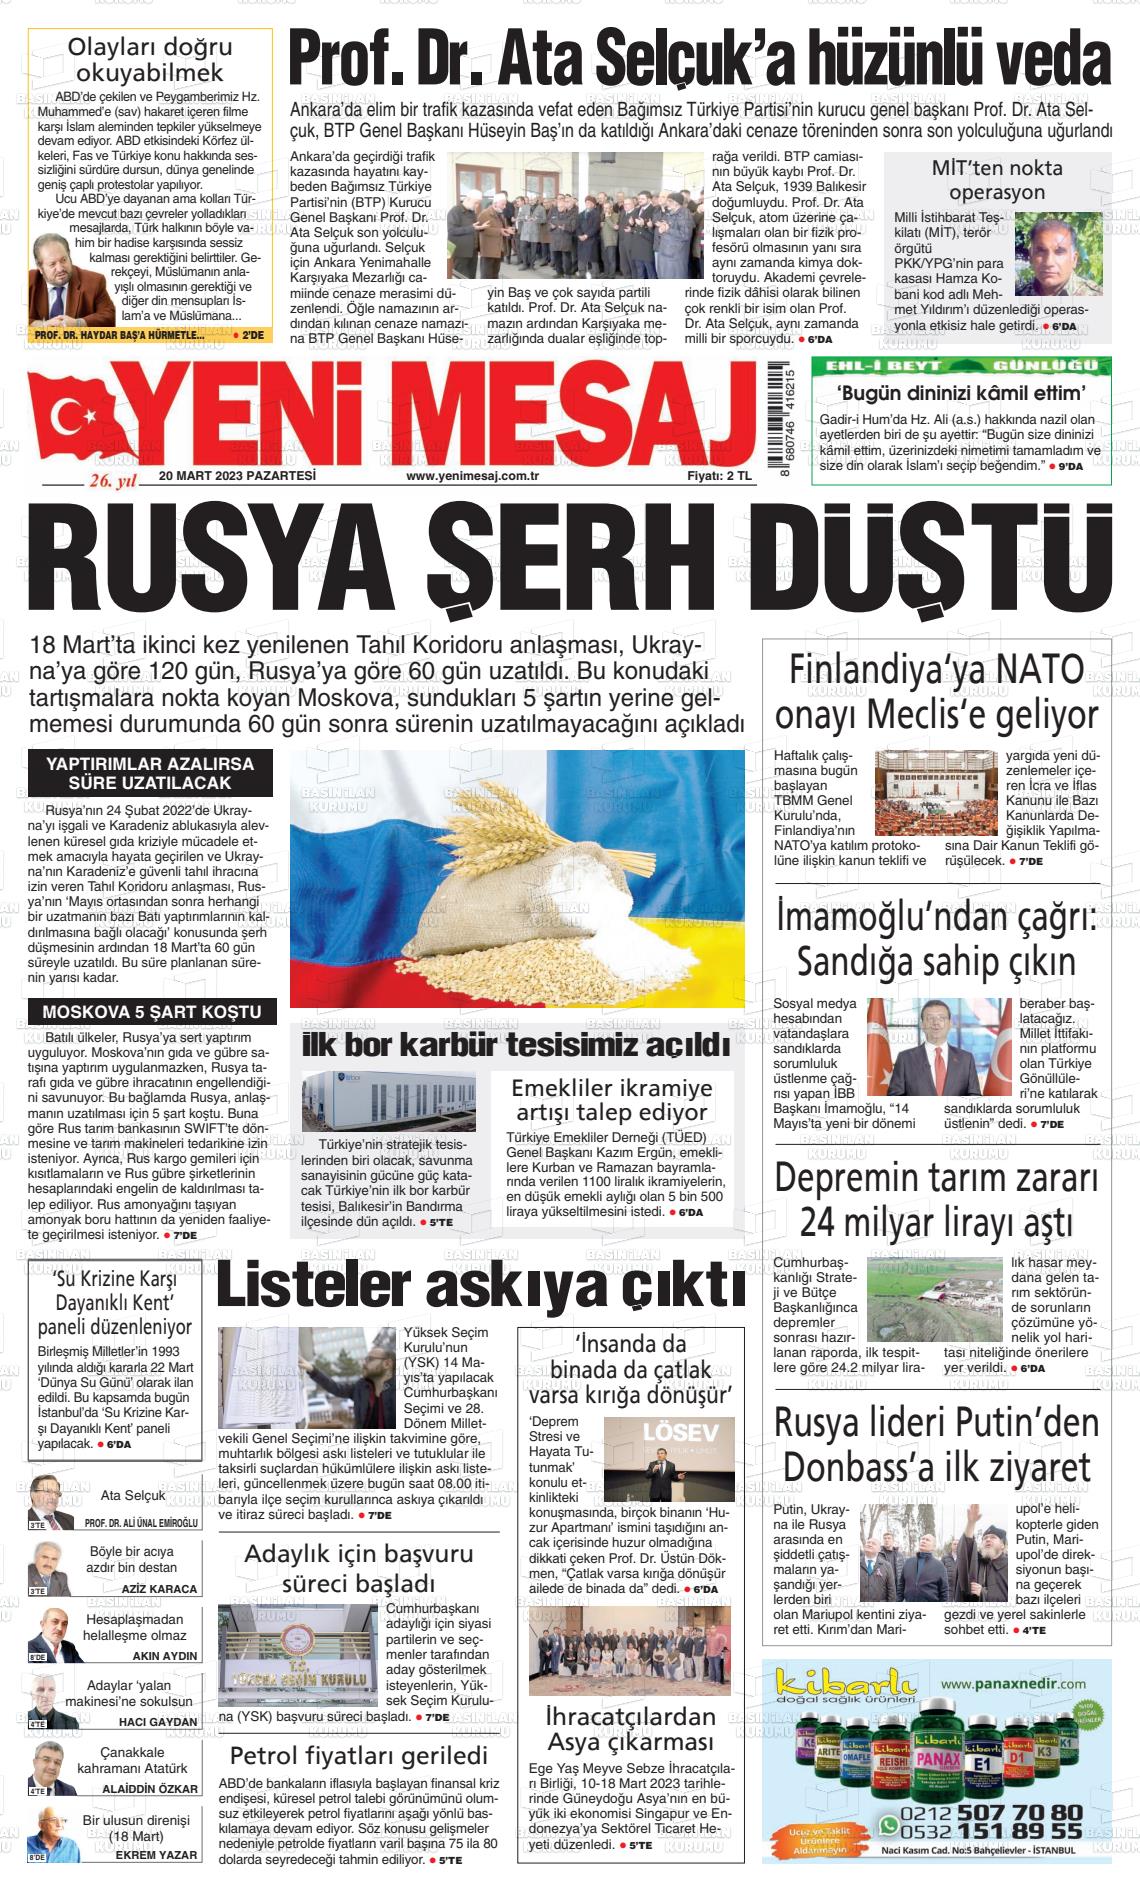 20 Mart 2023 Yeni Mesaj Gazete Manşeti